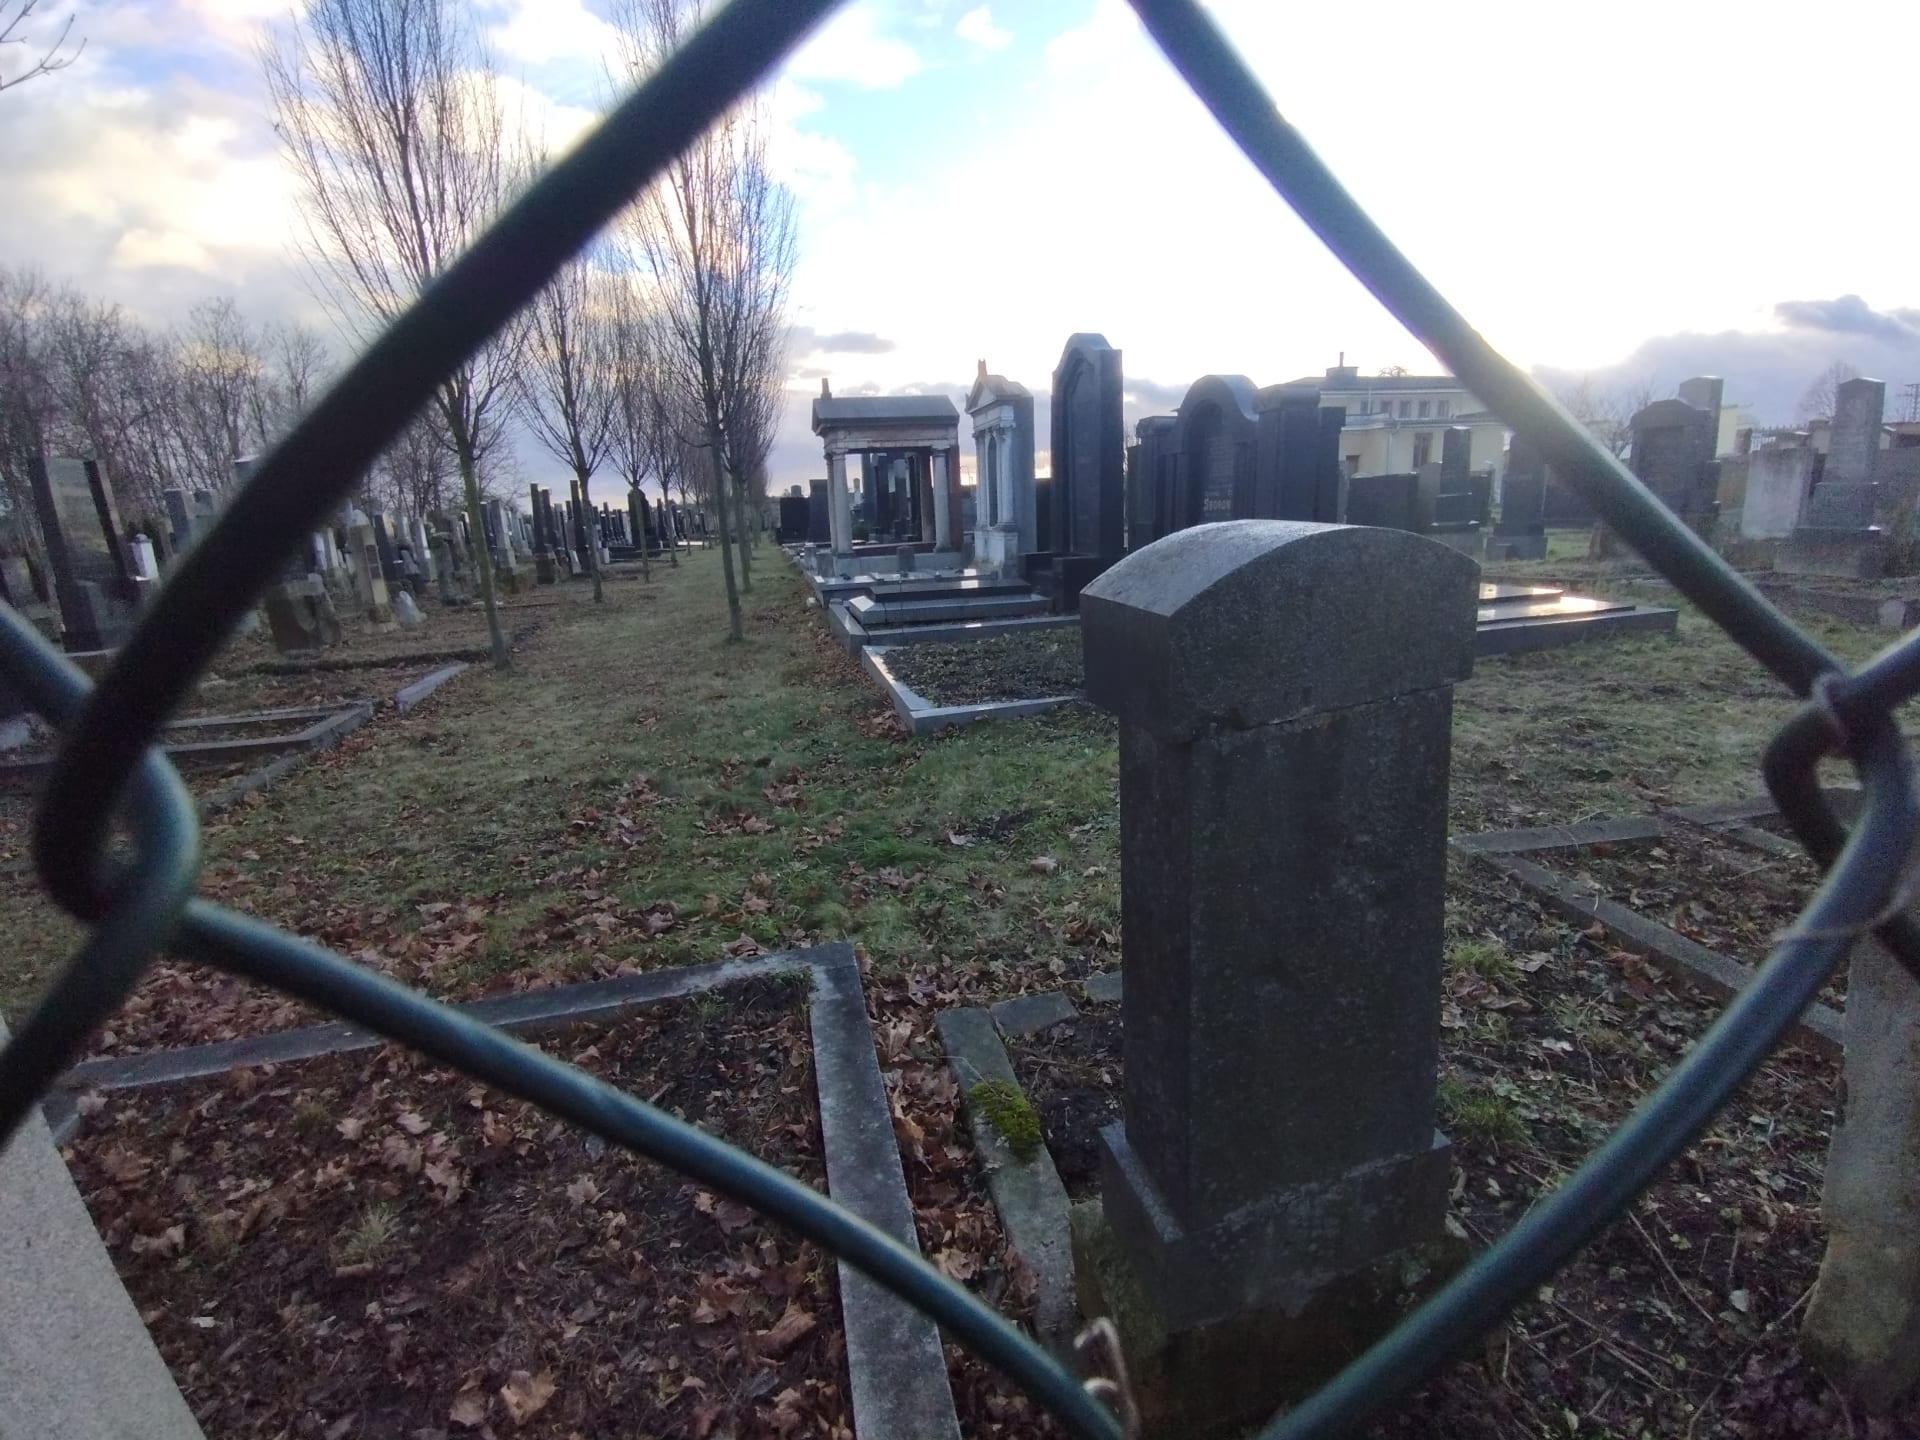 Hned v blízkosti Wolkerova hrobu začíná židovský hřbitov. Spousta prostějosvkých židovských spolužáků Jiřího Wolkera zahynula v koncentračních táborech.